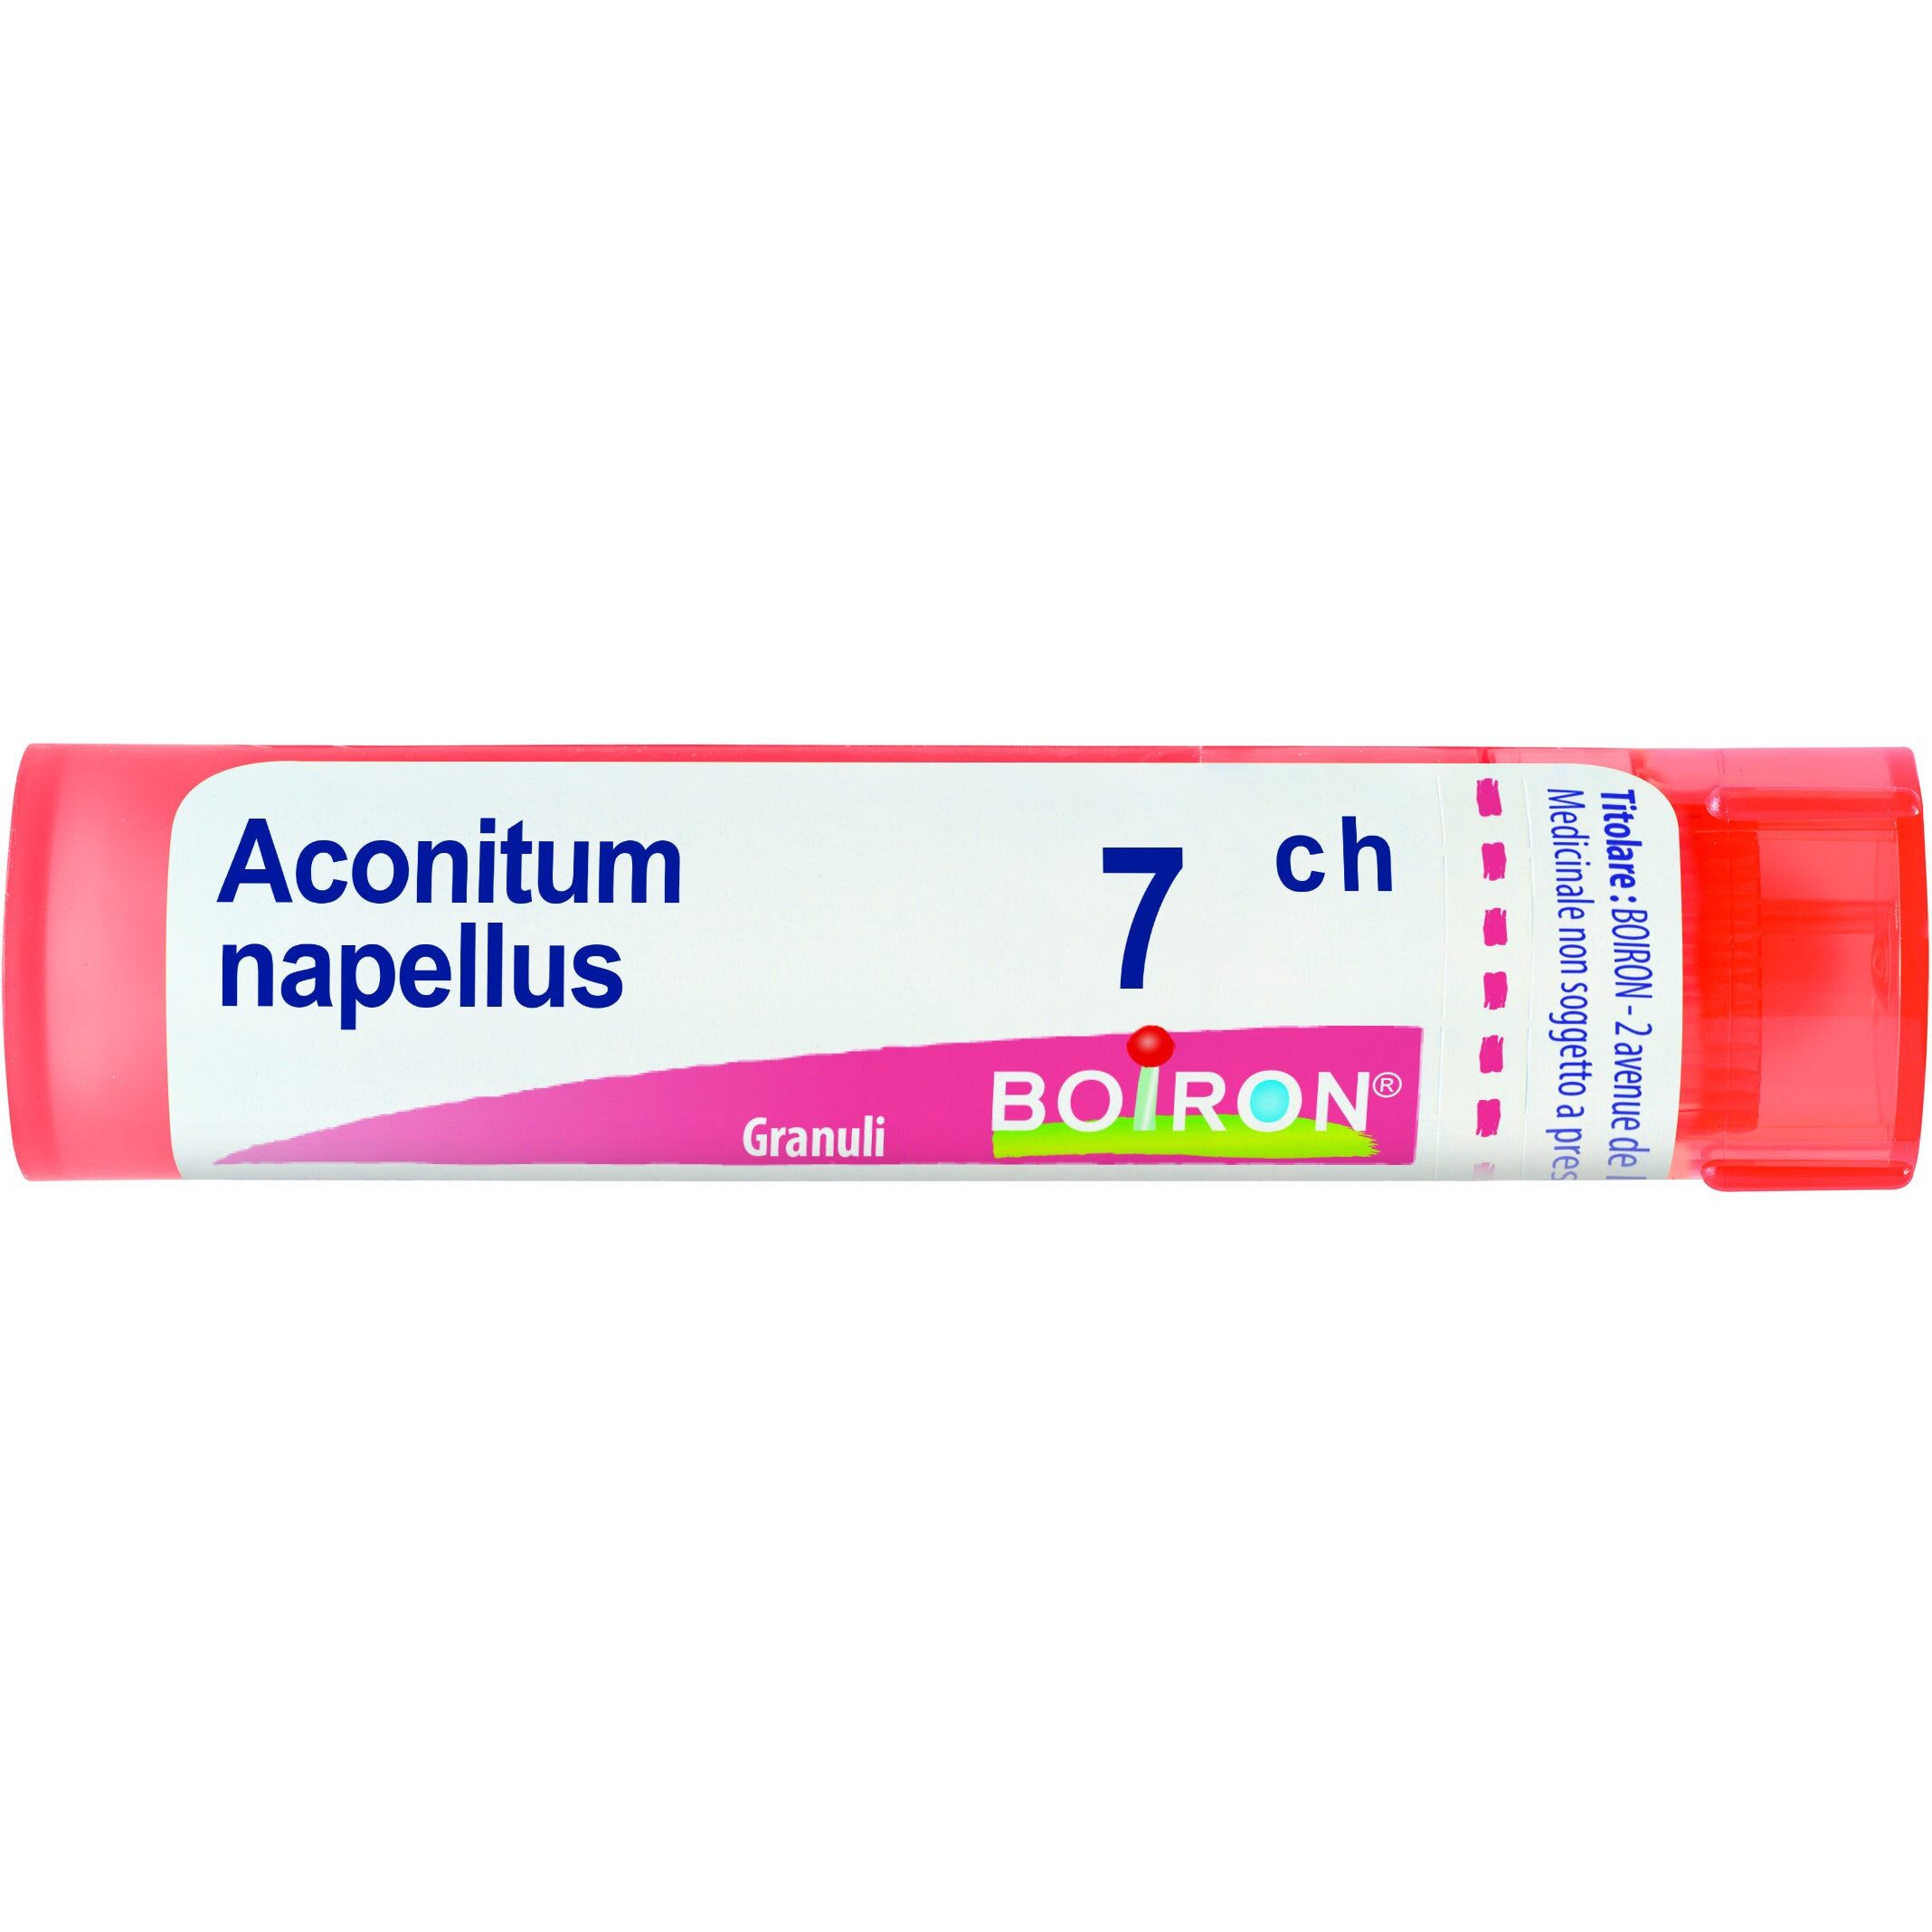 Boiron Aconitum Napellus 7 Ch Granuli